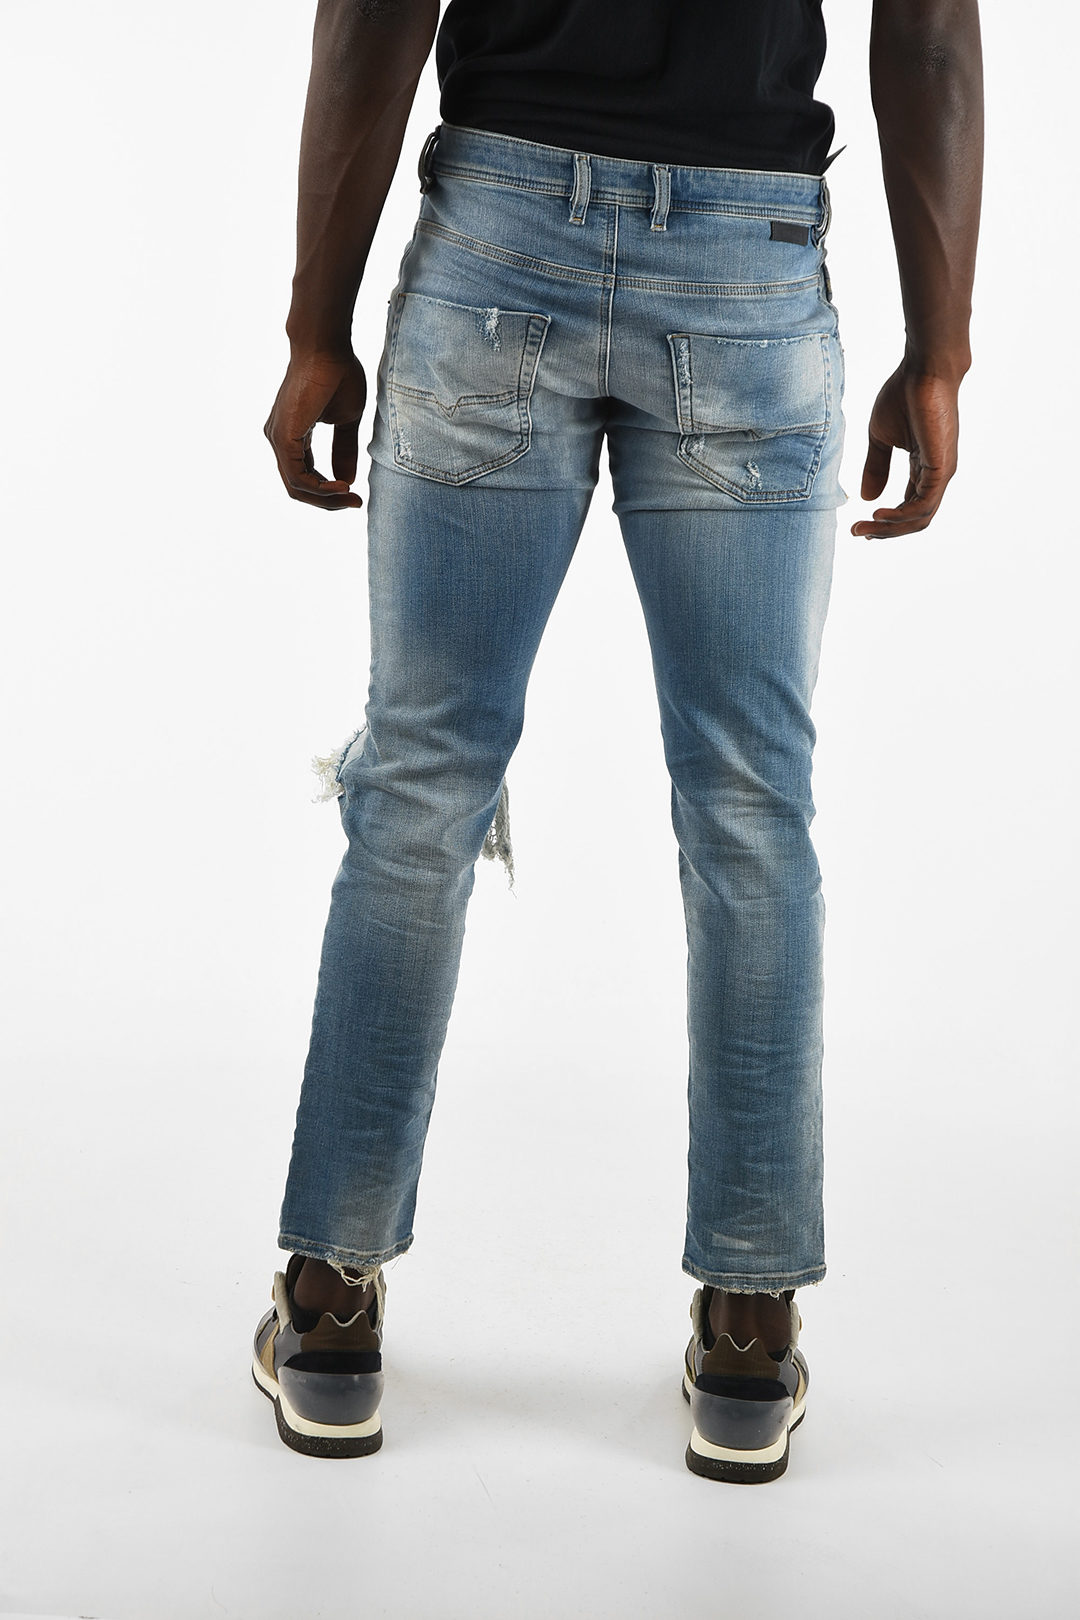 Klooster groet metro Diesel 18cm Vintage Effect KROOLEY-T Jogg Jeans men - Glamood Outlet